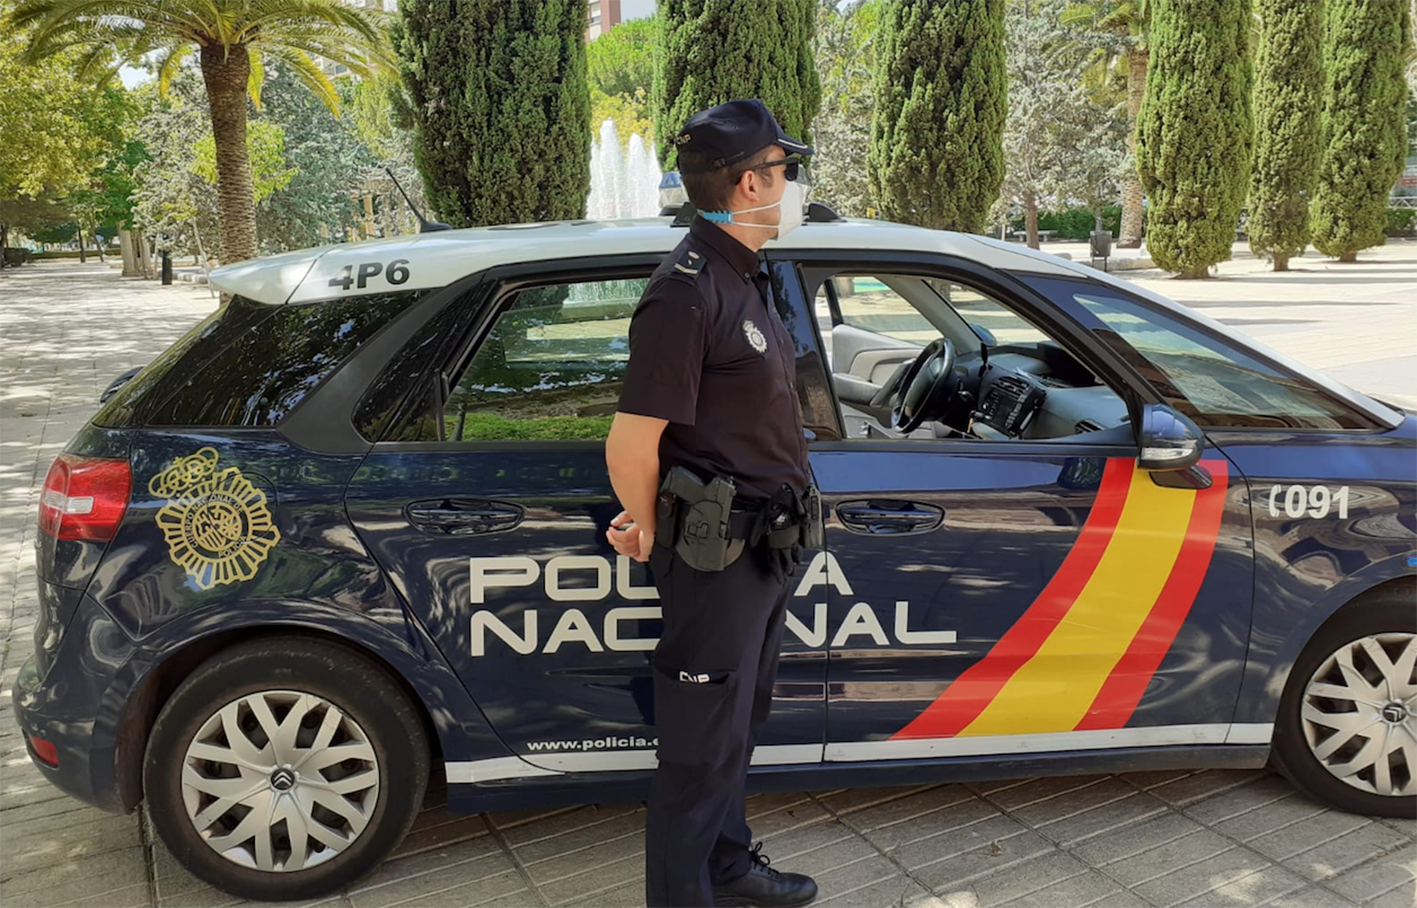 Vehículo policía nacional, coche